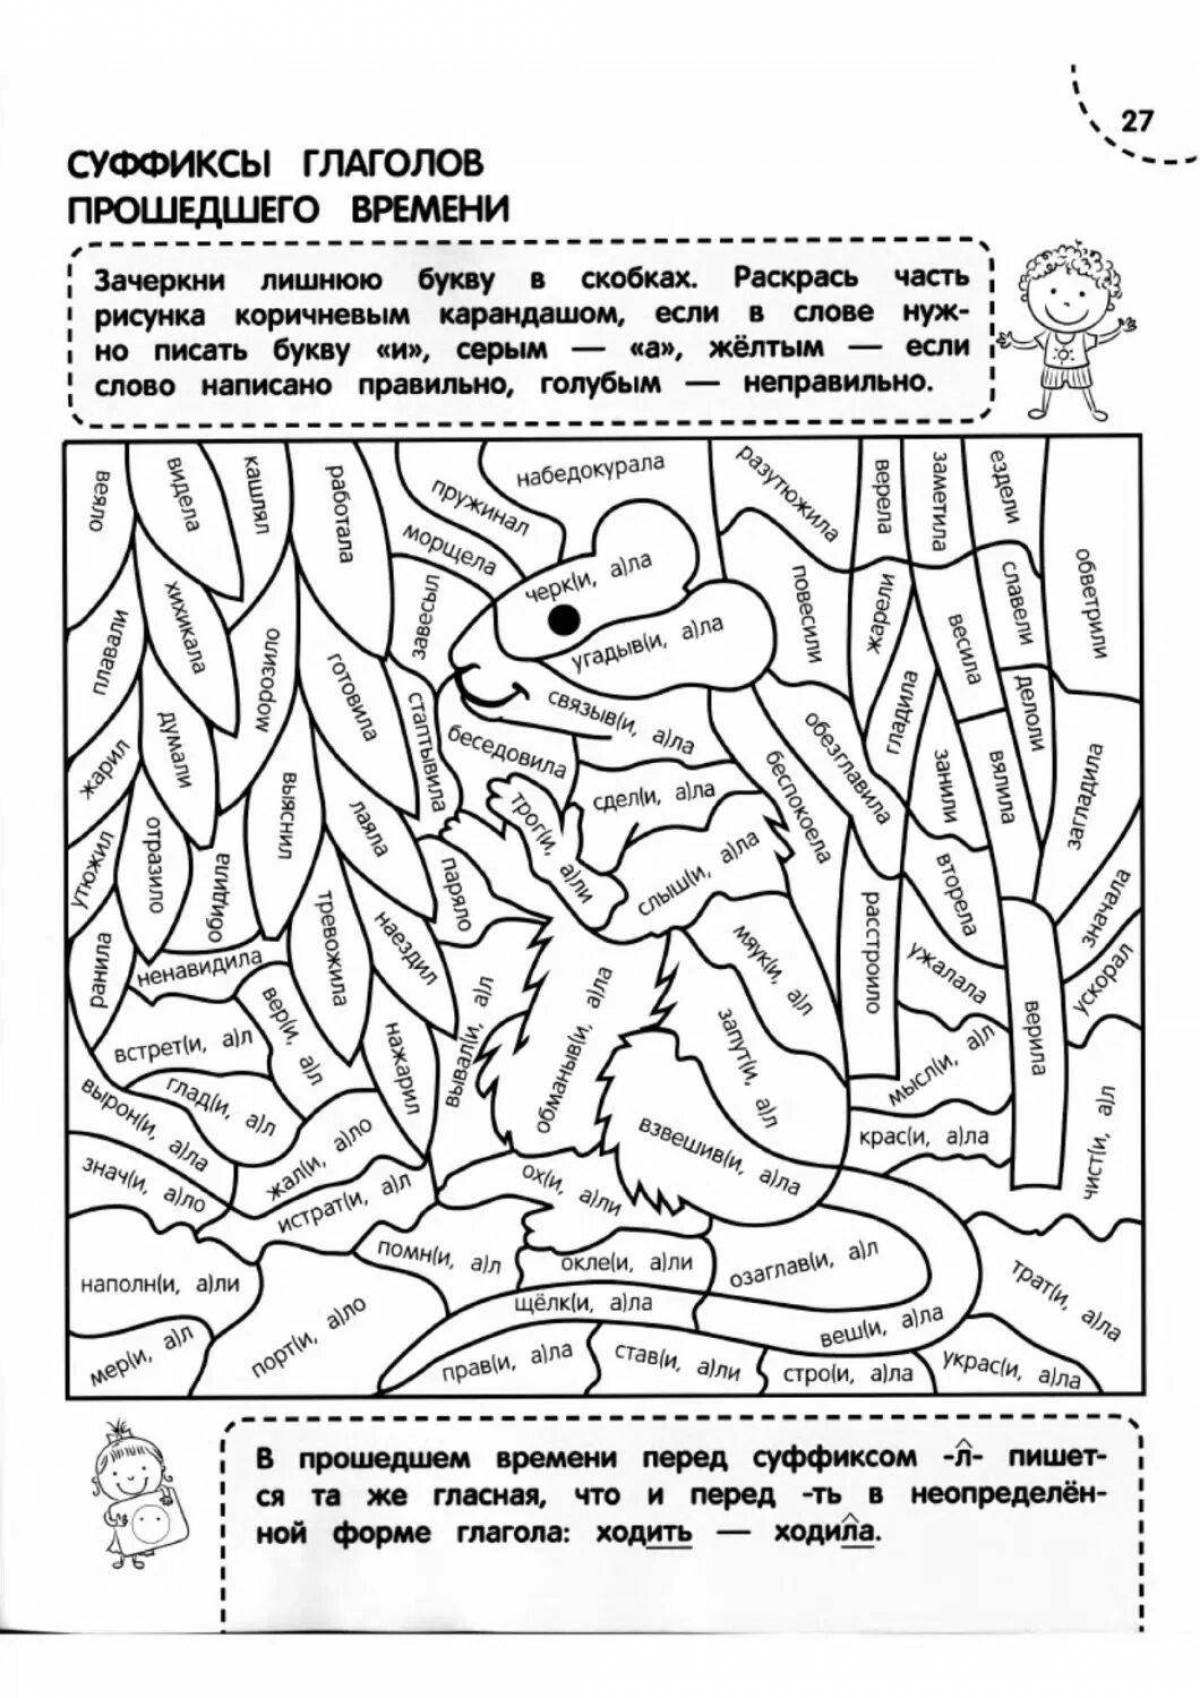 Раскраски по русскому языку и детской литературе. 4-5 классы. Часть 3 [Анна Вайнруб]